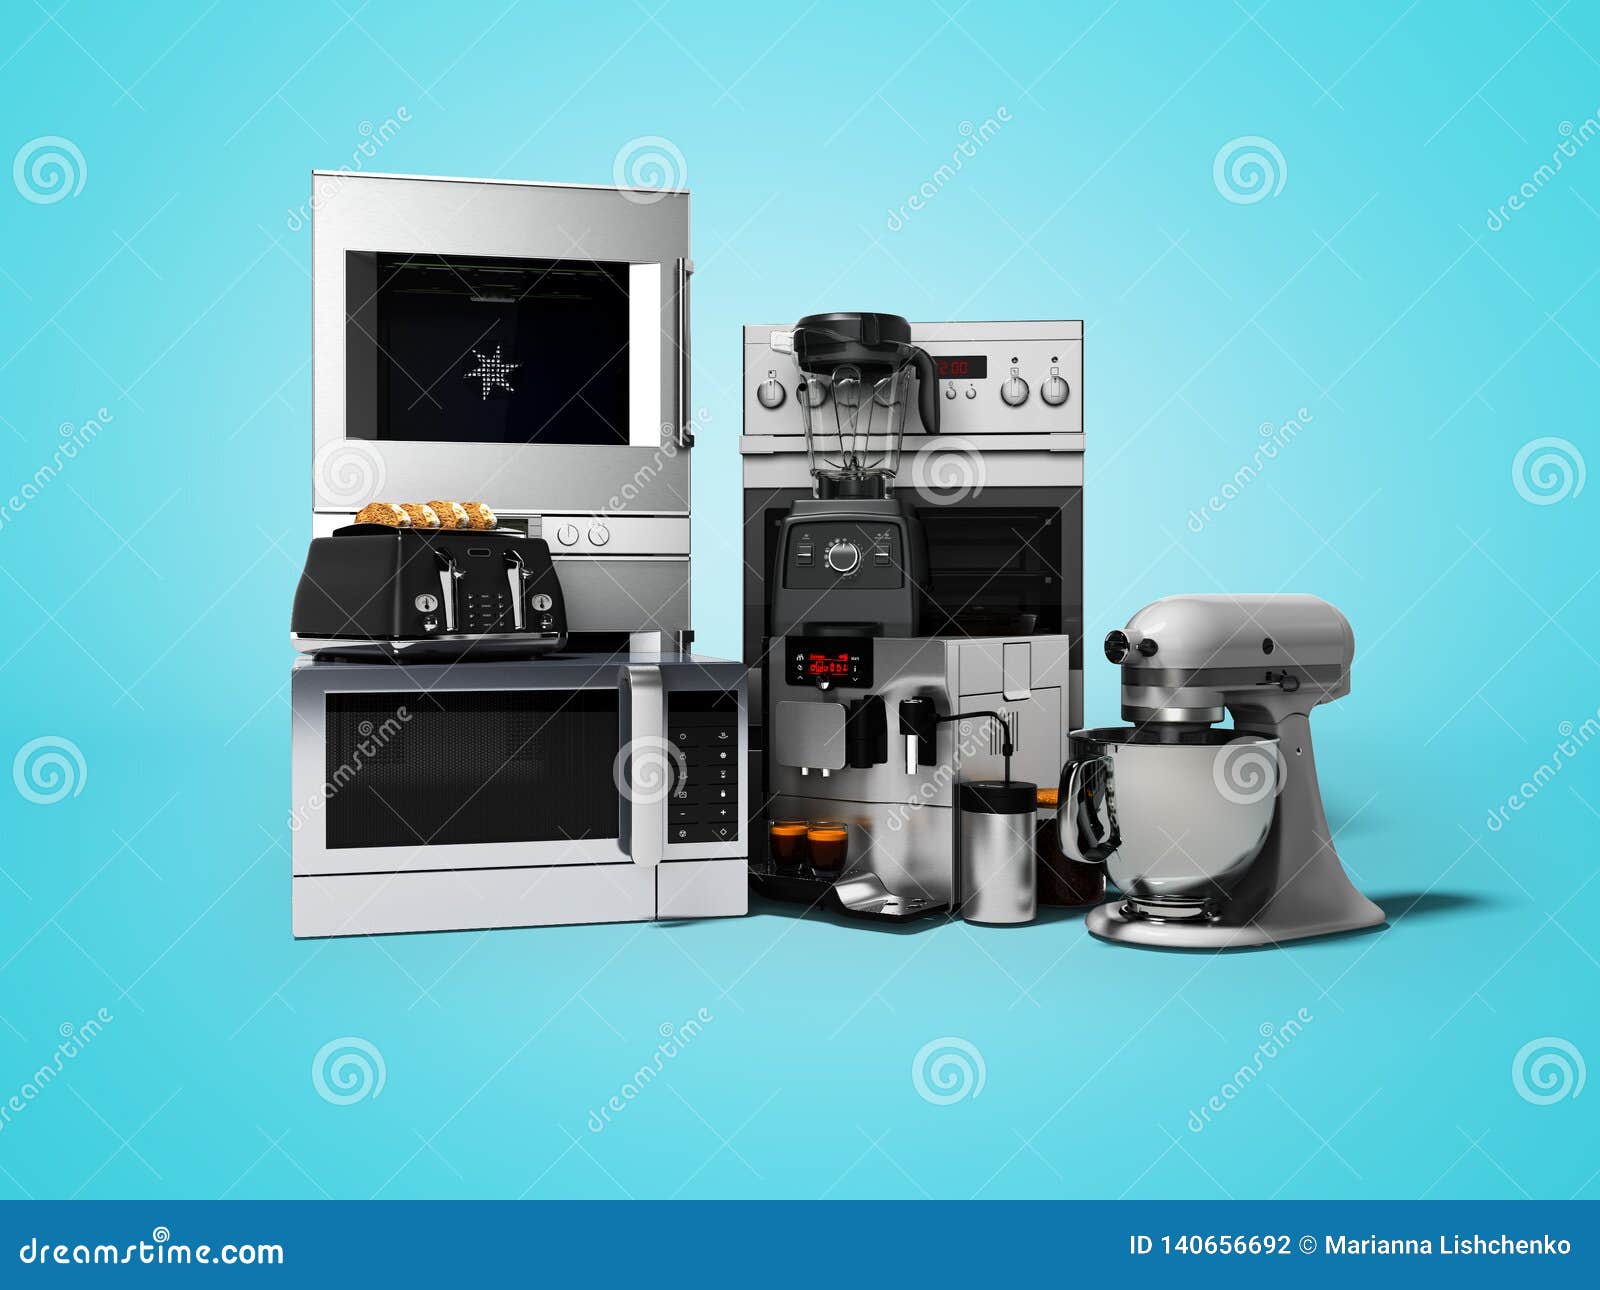 Thiết bị nhà bếp - Những thiết bị nhà bếp hiện đại sẽ làm cho công việc của bạn trở nên dễ dàng và nhanh chóng hơn. Với các thiết bị như máy xay sinh tố, máy ép trái cây hay máy làm bánh, bạn sẽ có thể trổ tài nấu ăn và làm những món ngon đậm chất riêng của mình. Xem hình ảnh về thiết bị nhà bếp để thấy được sự tiện lợi và đa dạng của chúng!